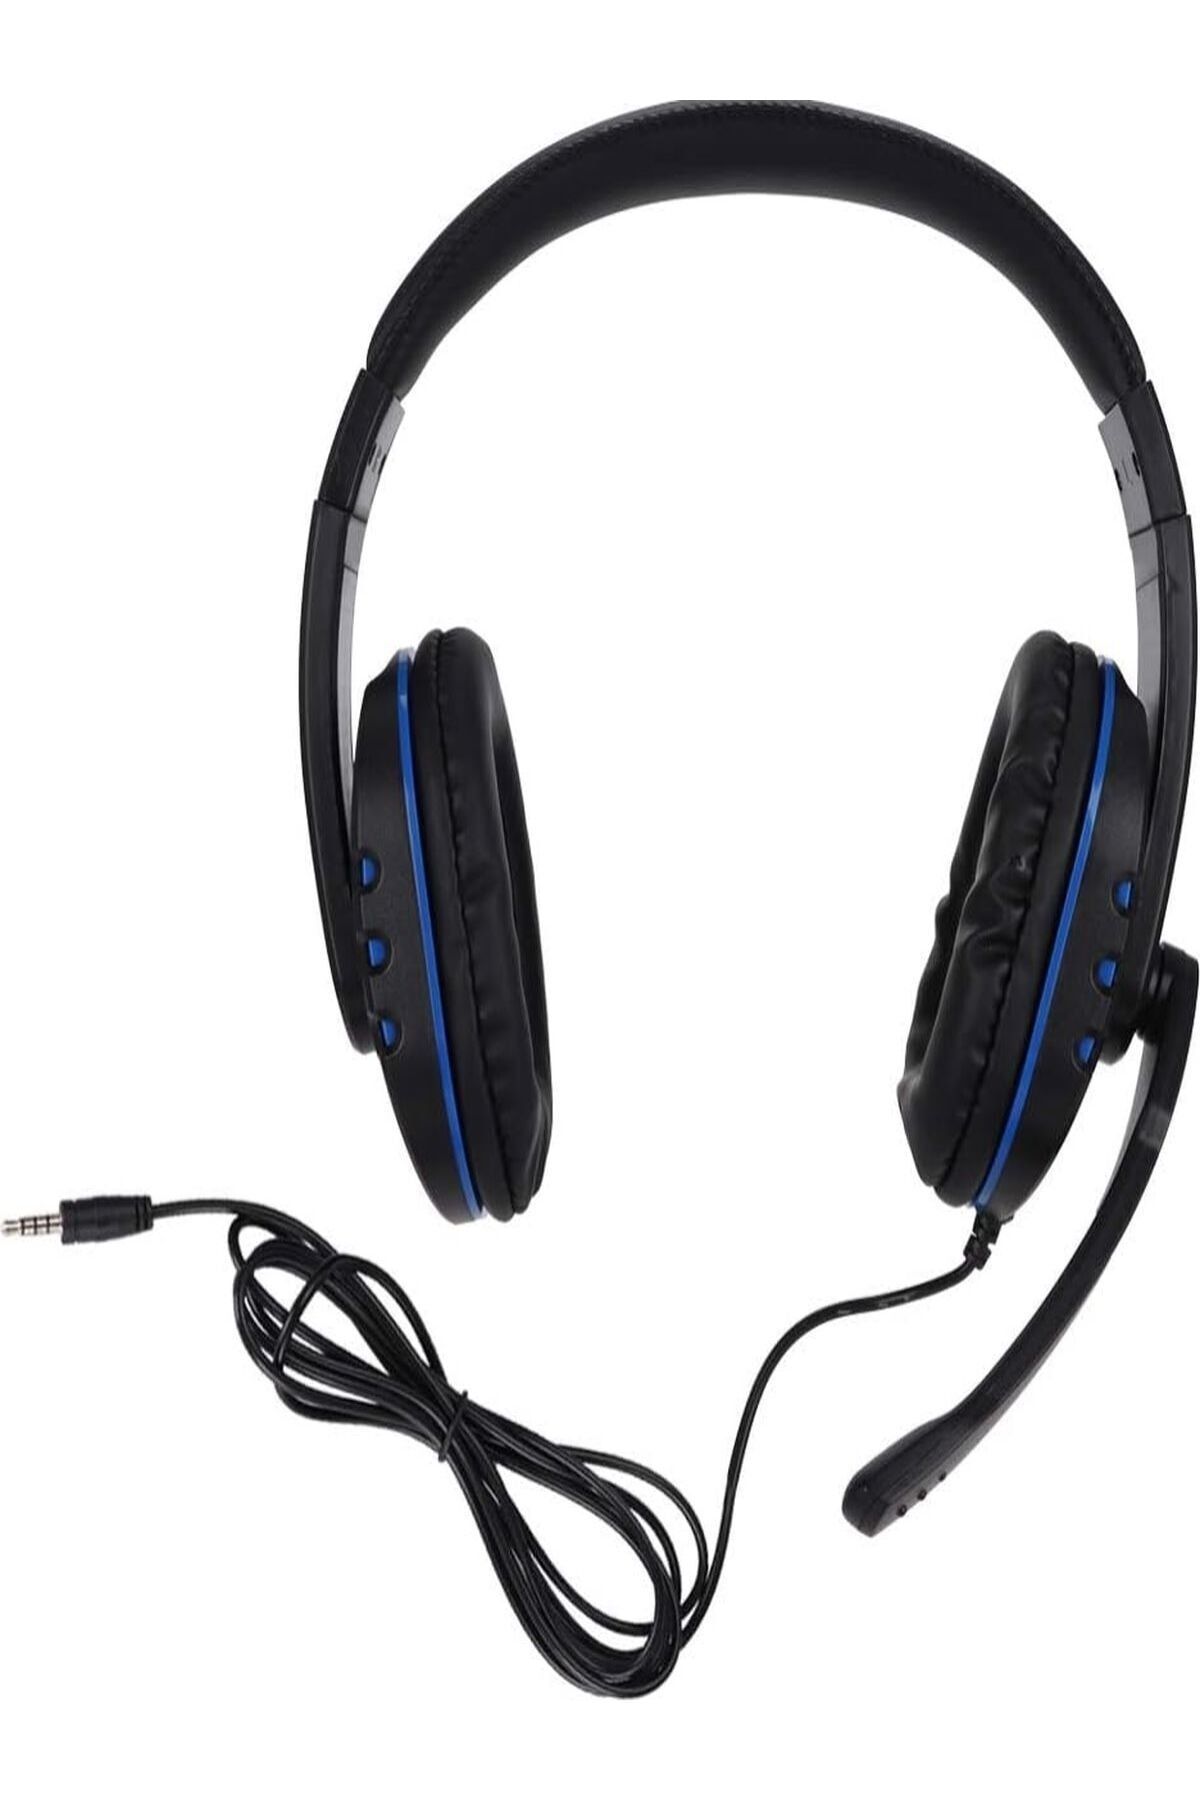 Özasya AVM Oyuncu Gamer Gaming Kulaklığı Usb Girişli Mikrofon Kulaküstü Kulaklık